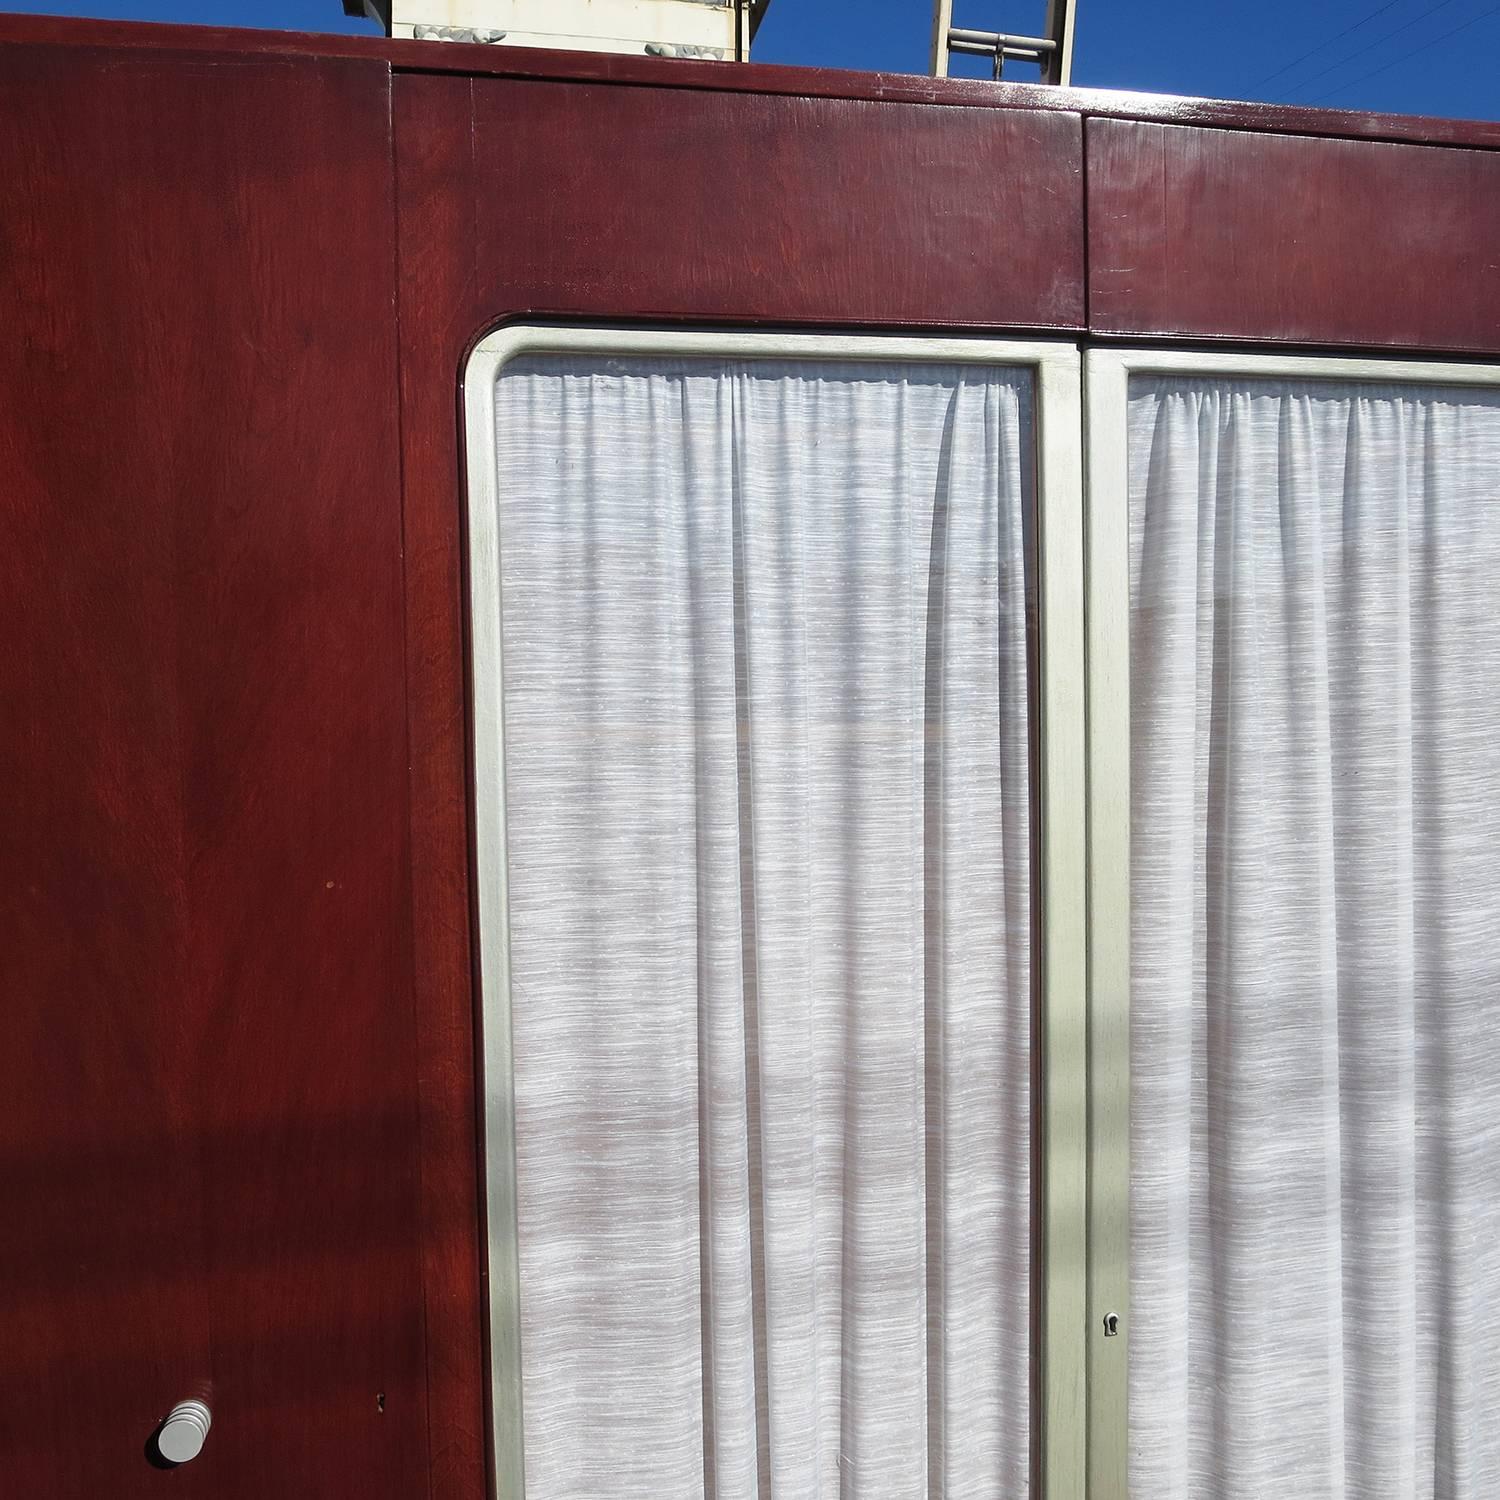 English Queen Mary Ocean Liner Art Deco Wardrobe Cabinet